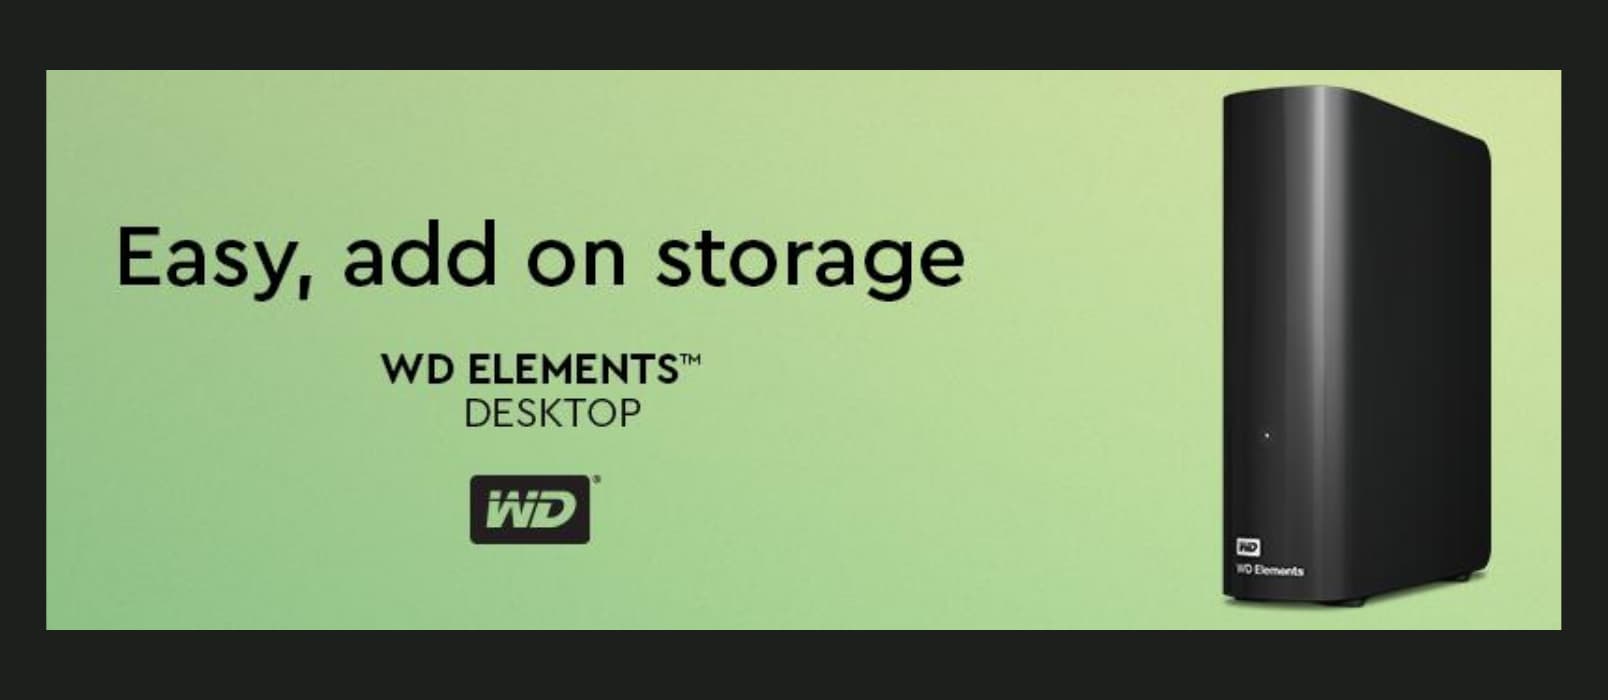 亚马逊镇店之宝：Western Digital 12TB Elements 外置硬盘 特价又来了 1